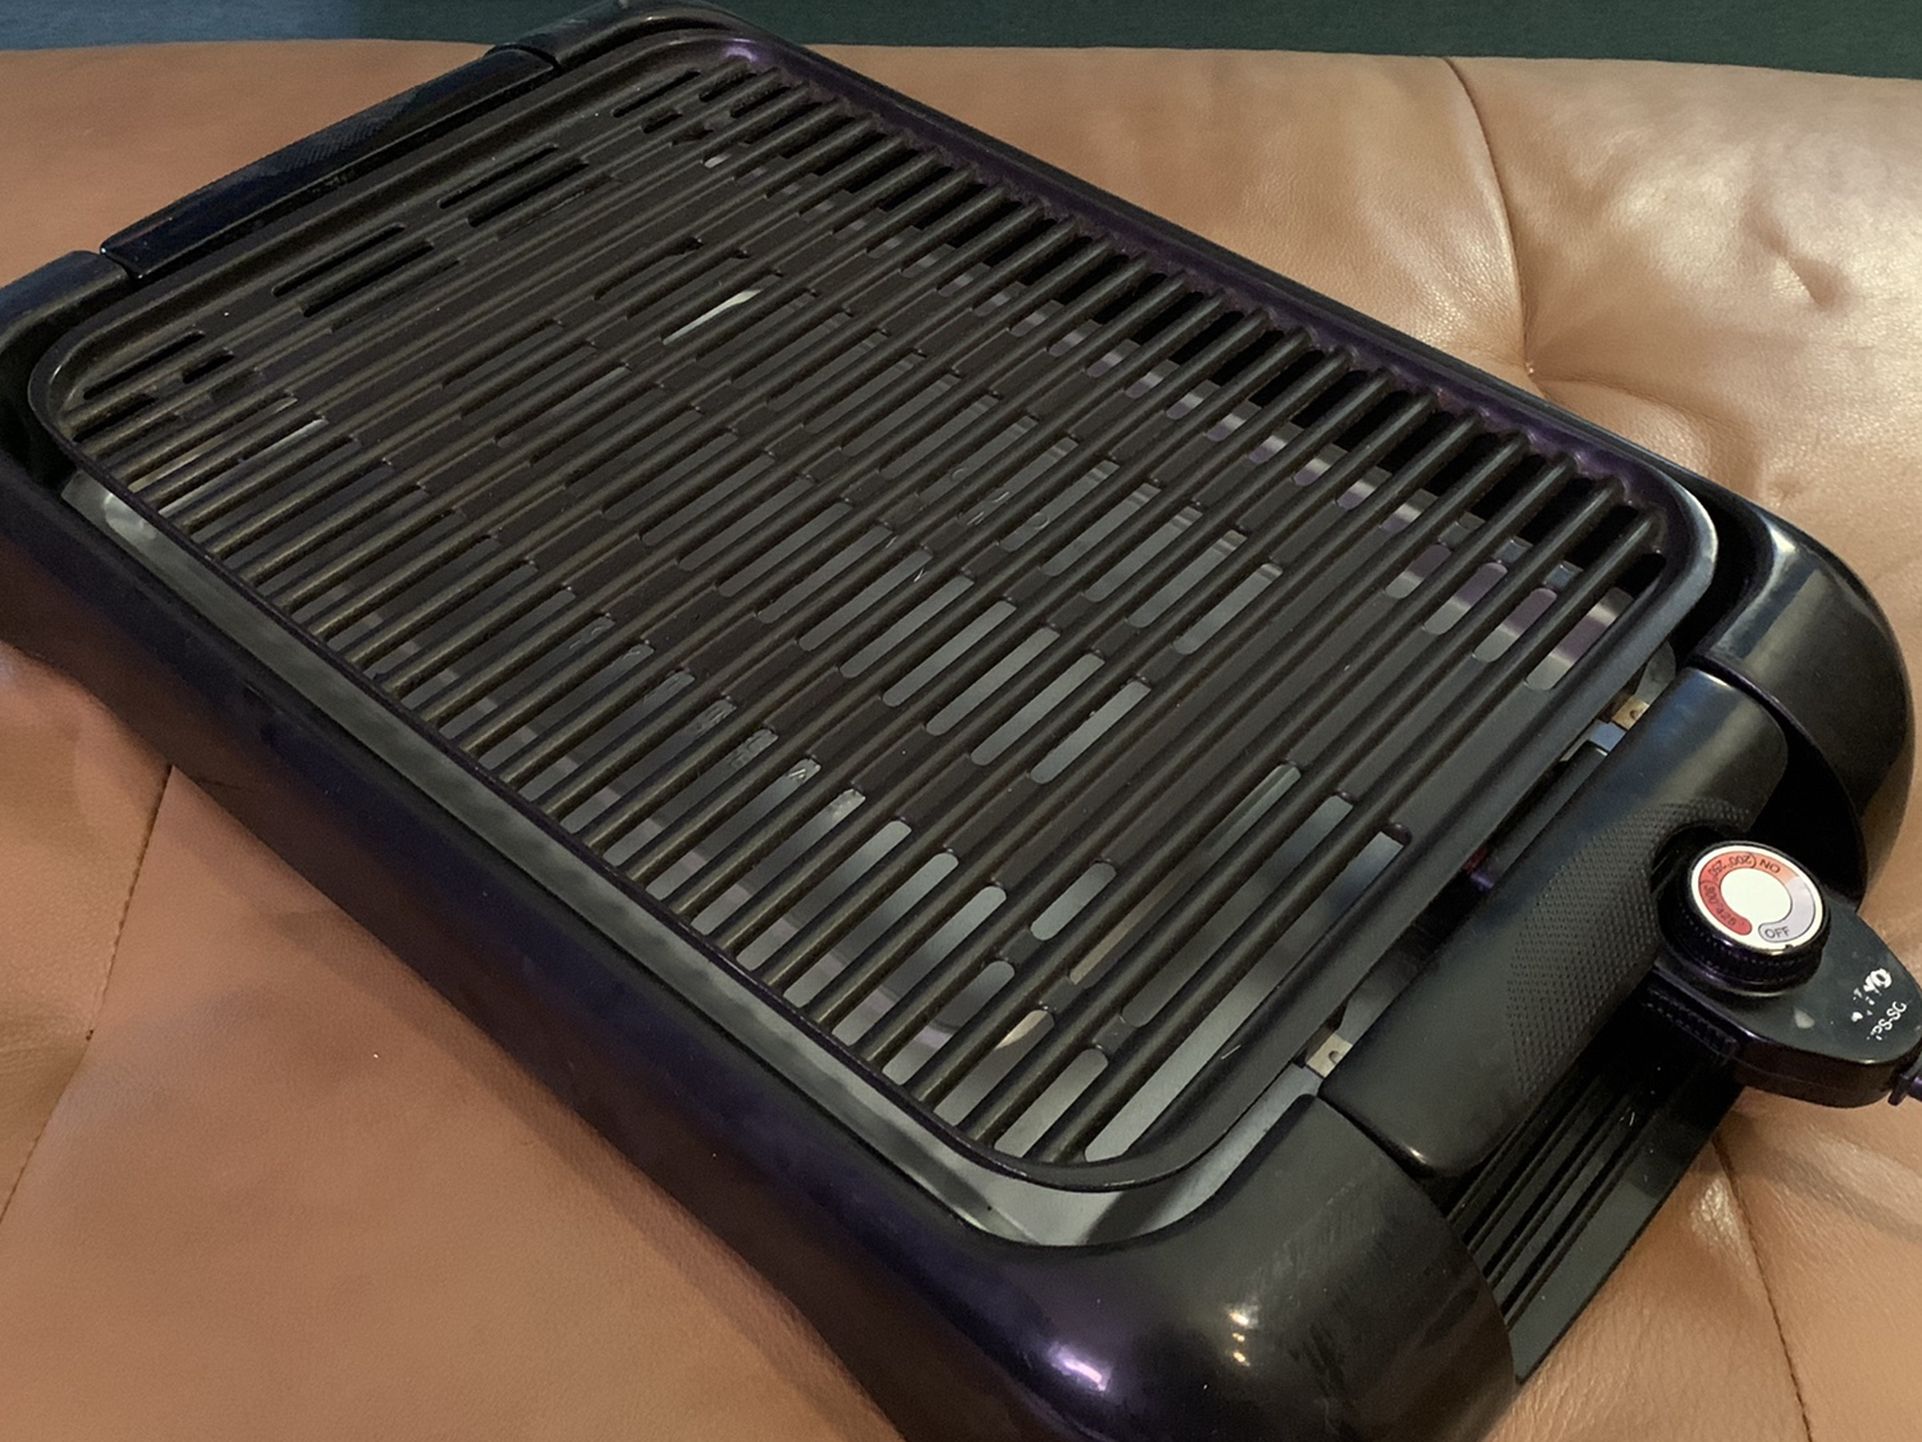 Electric smokeless indoor / outdoor grill